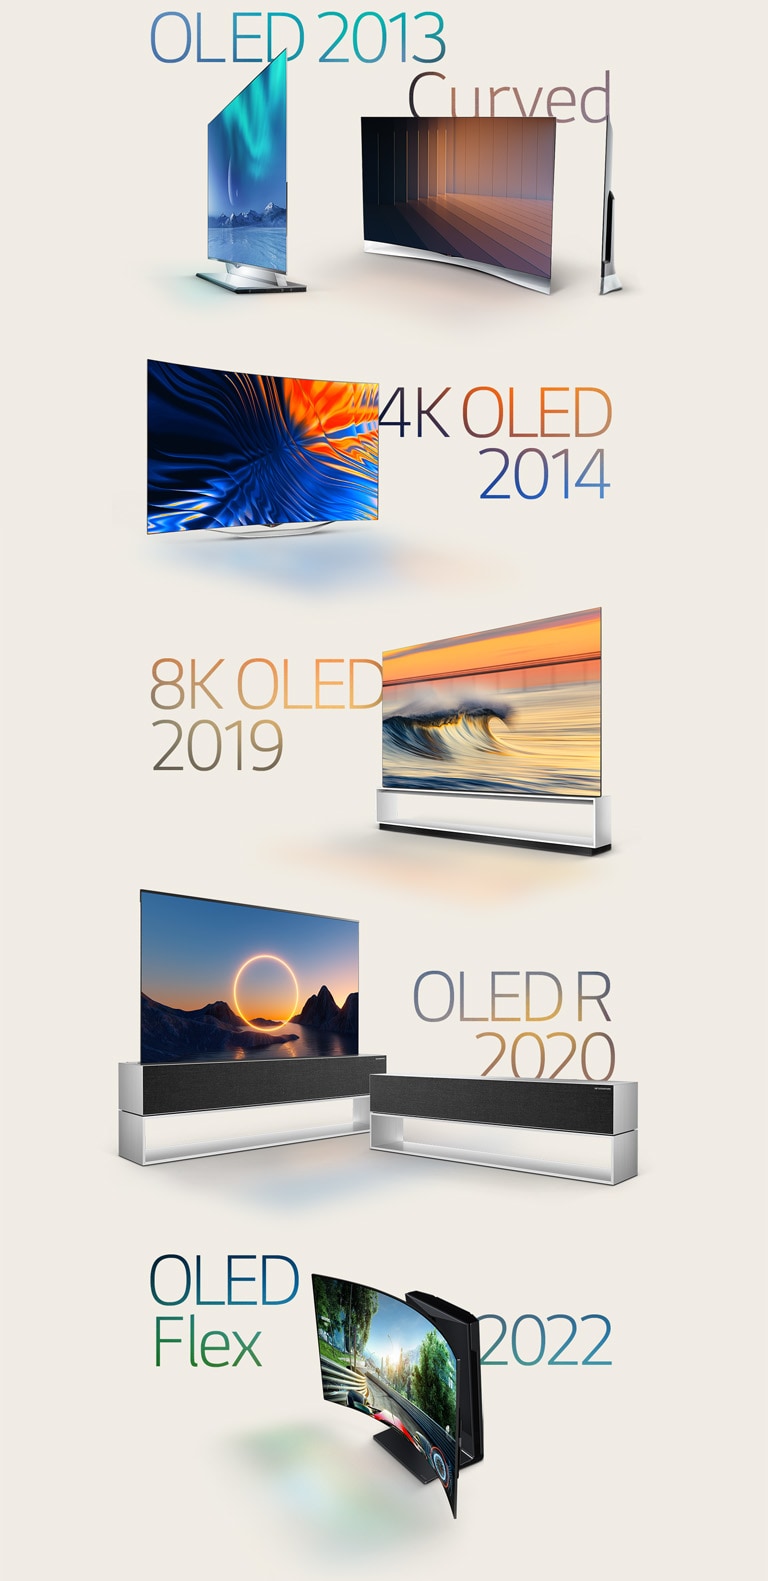 知名 LG OLED 的圖片：2013 年曲面 OLED、2014 年 4K OLED、2019 年 8K OLED、2020 年可捲式 OLED 及 2022 年 LG OLED Flex。